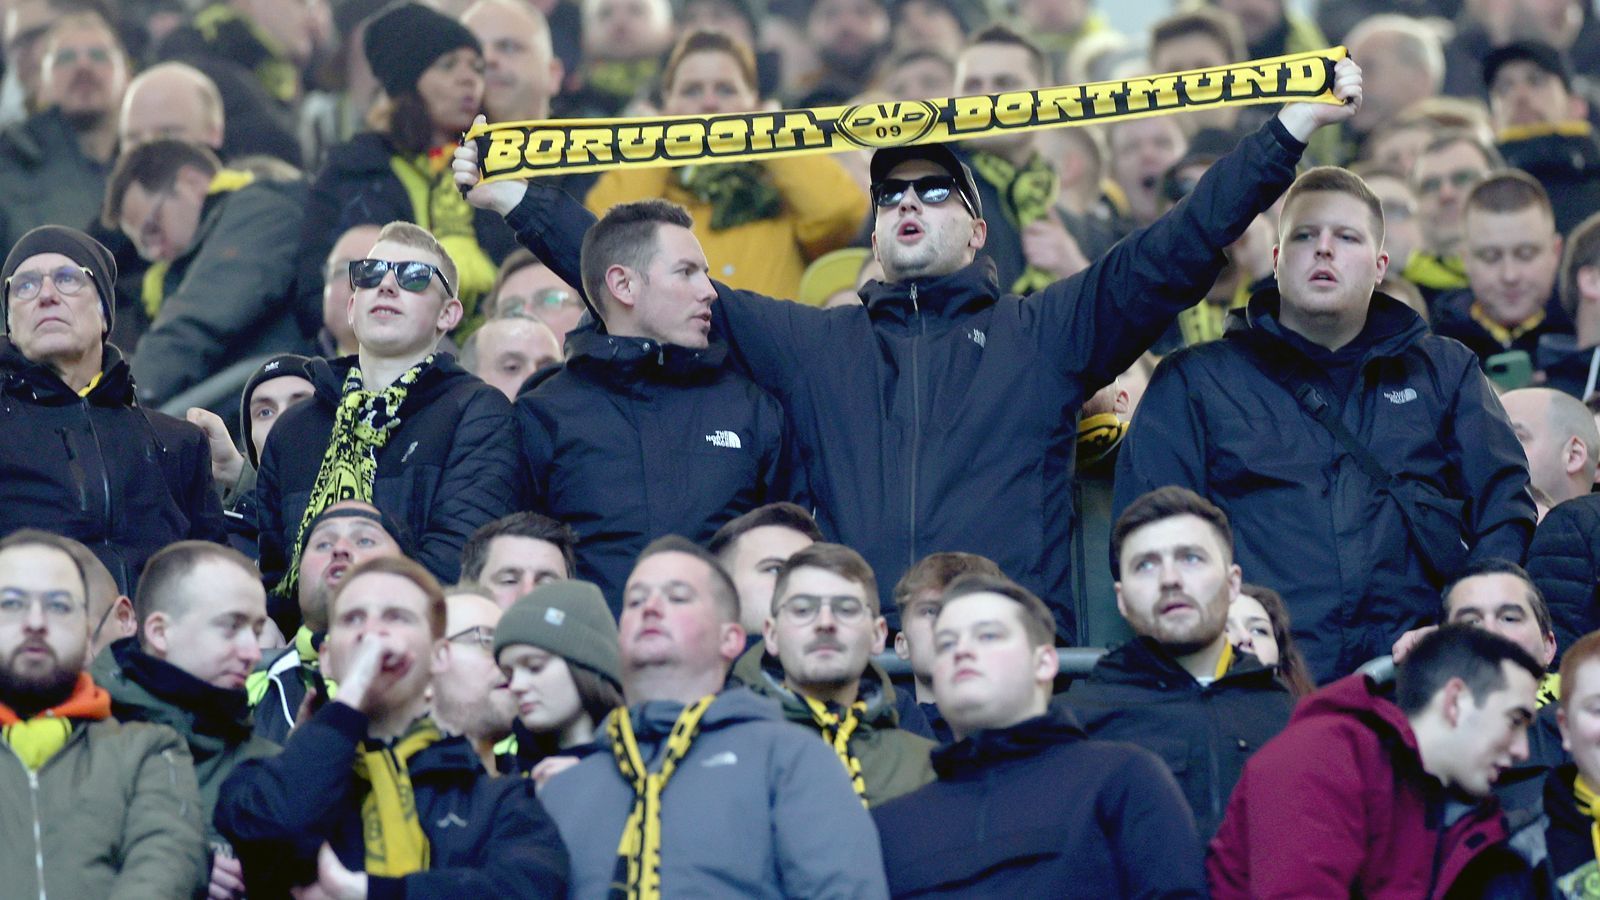 
                <strong>Platz 3 - Borussia Dortmund</strong><br>
                &#x2022; Durchschnittliche Anzahl an Auswärtsfans: 5.912<br>&#x2022; Höchste Anzahl an Auswärtsfahrern: 14.000 (bei Hertha BSC)<br>&#x2022; Niedrigste Anzahl an Auswärtsfahrern: 2.500 (bei Union Berlin)<br>
              